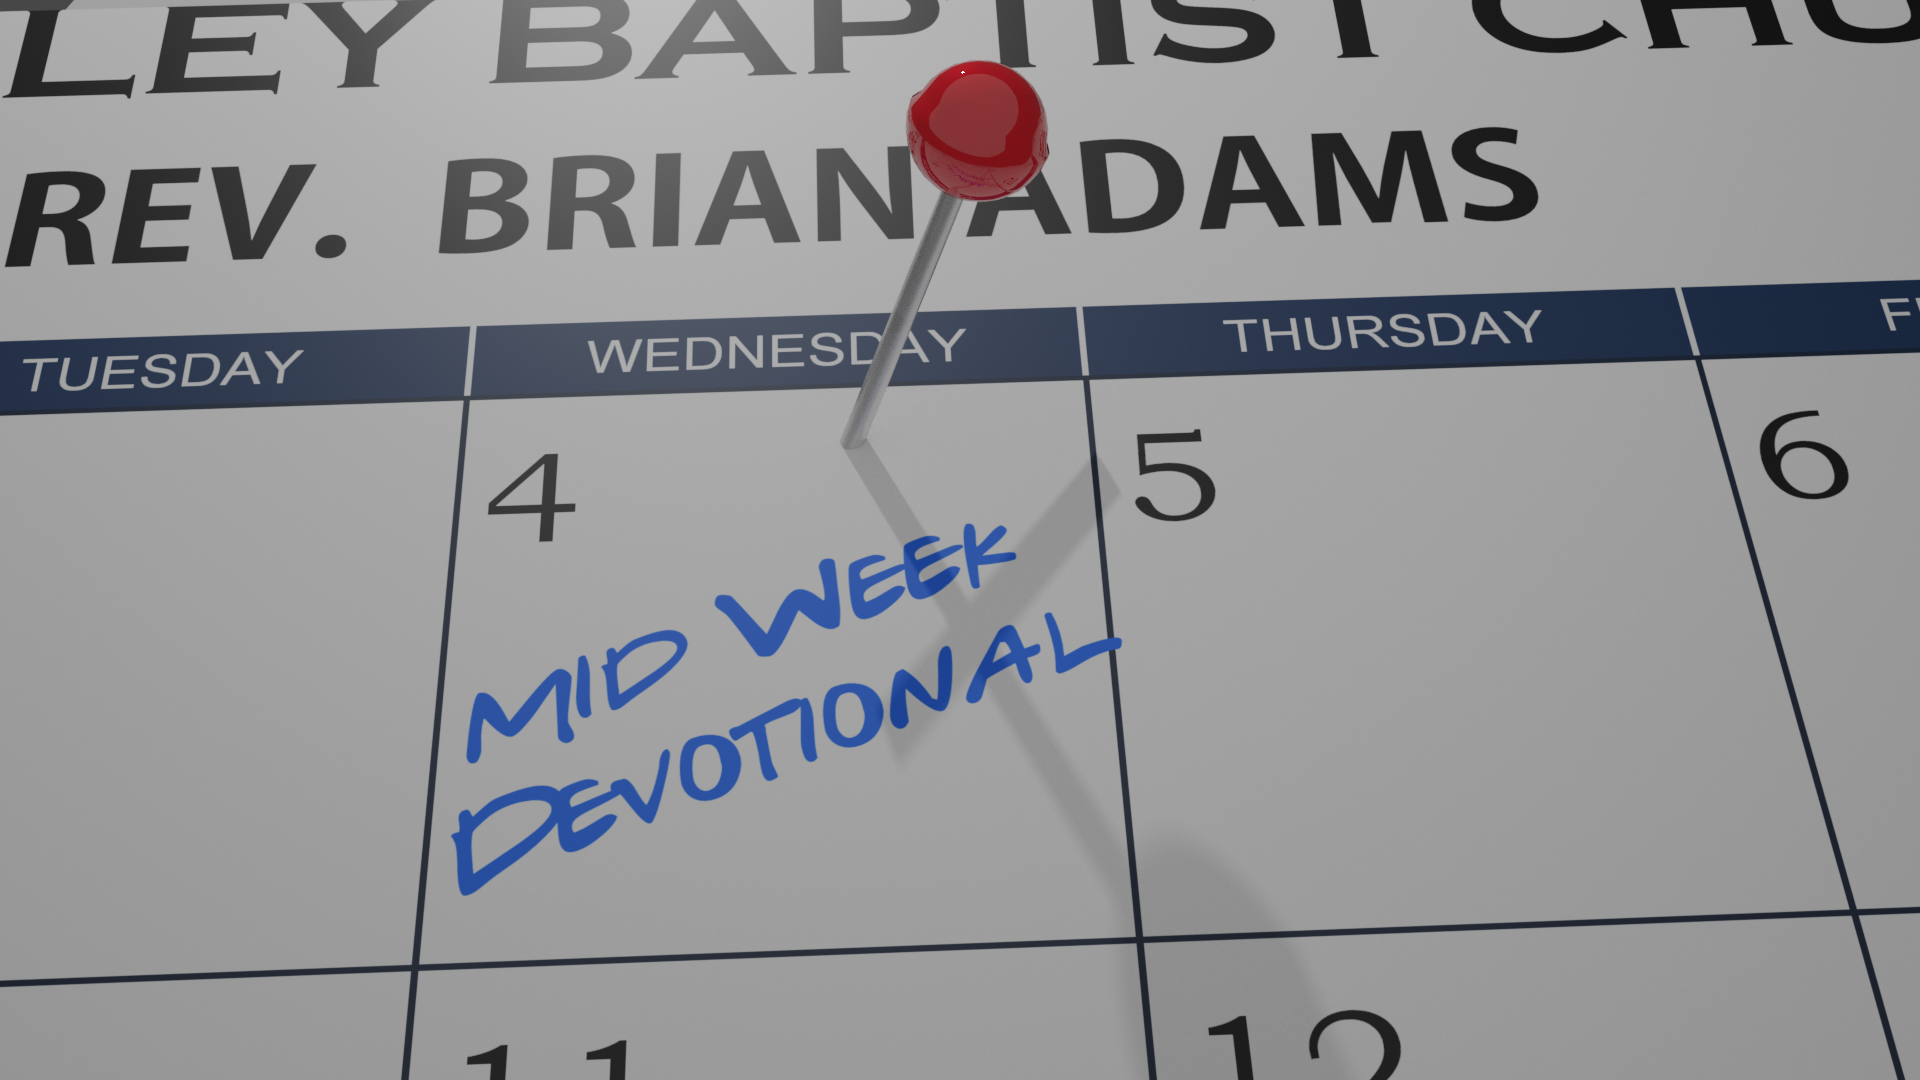 Mid-Week Devotional 1/13/21